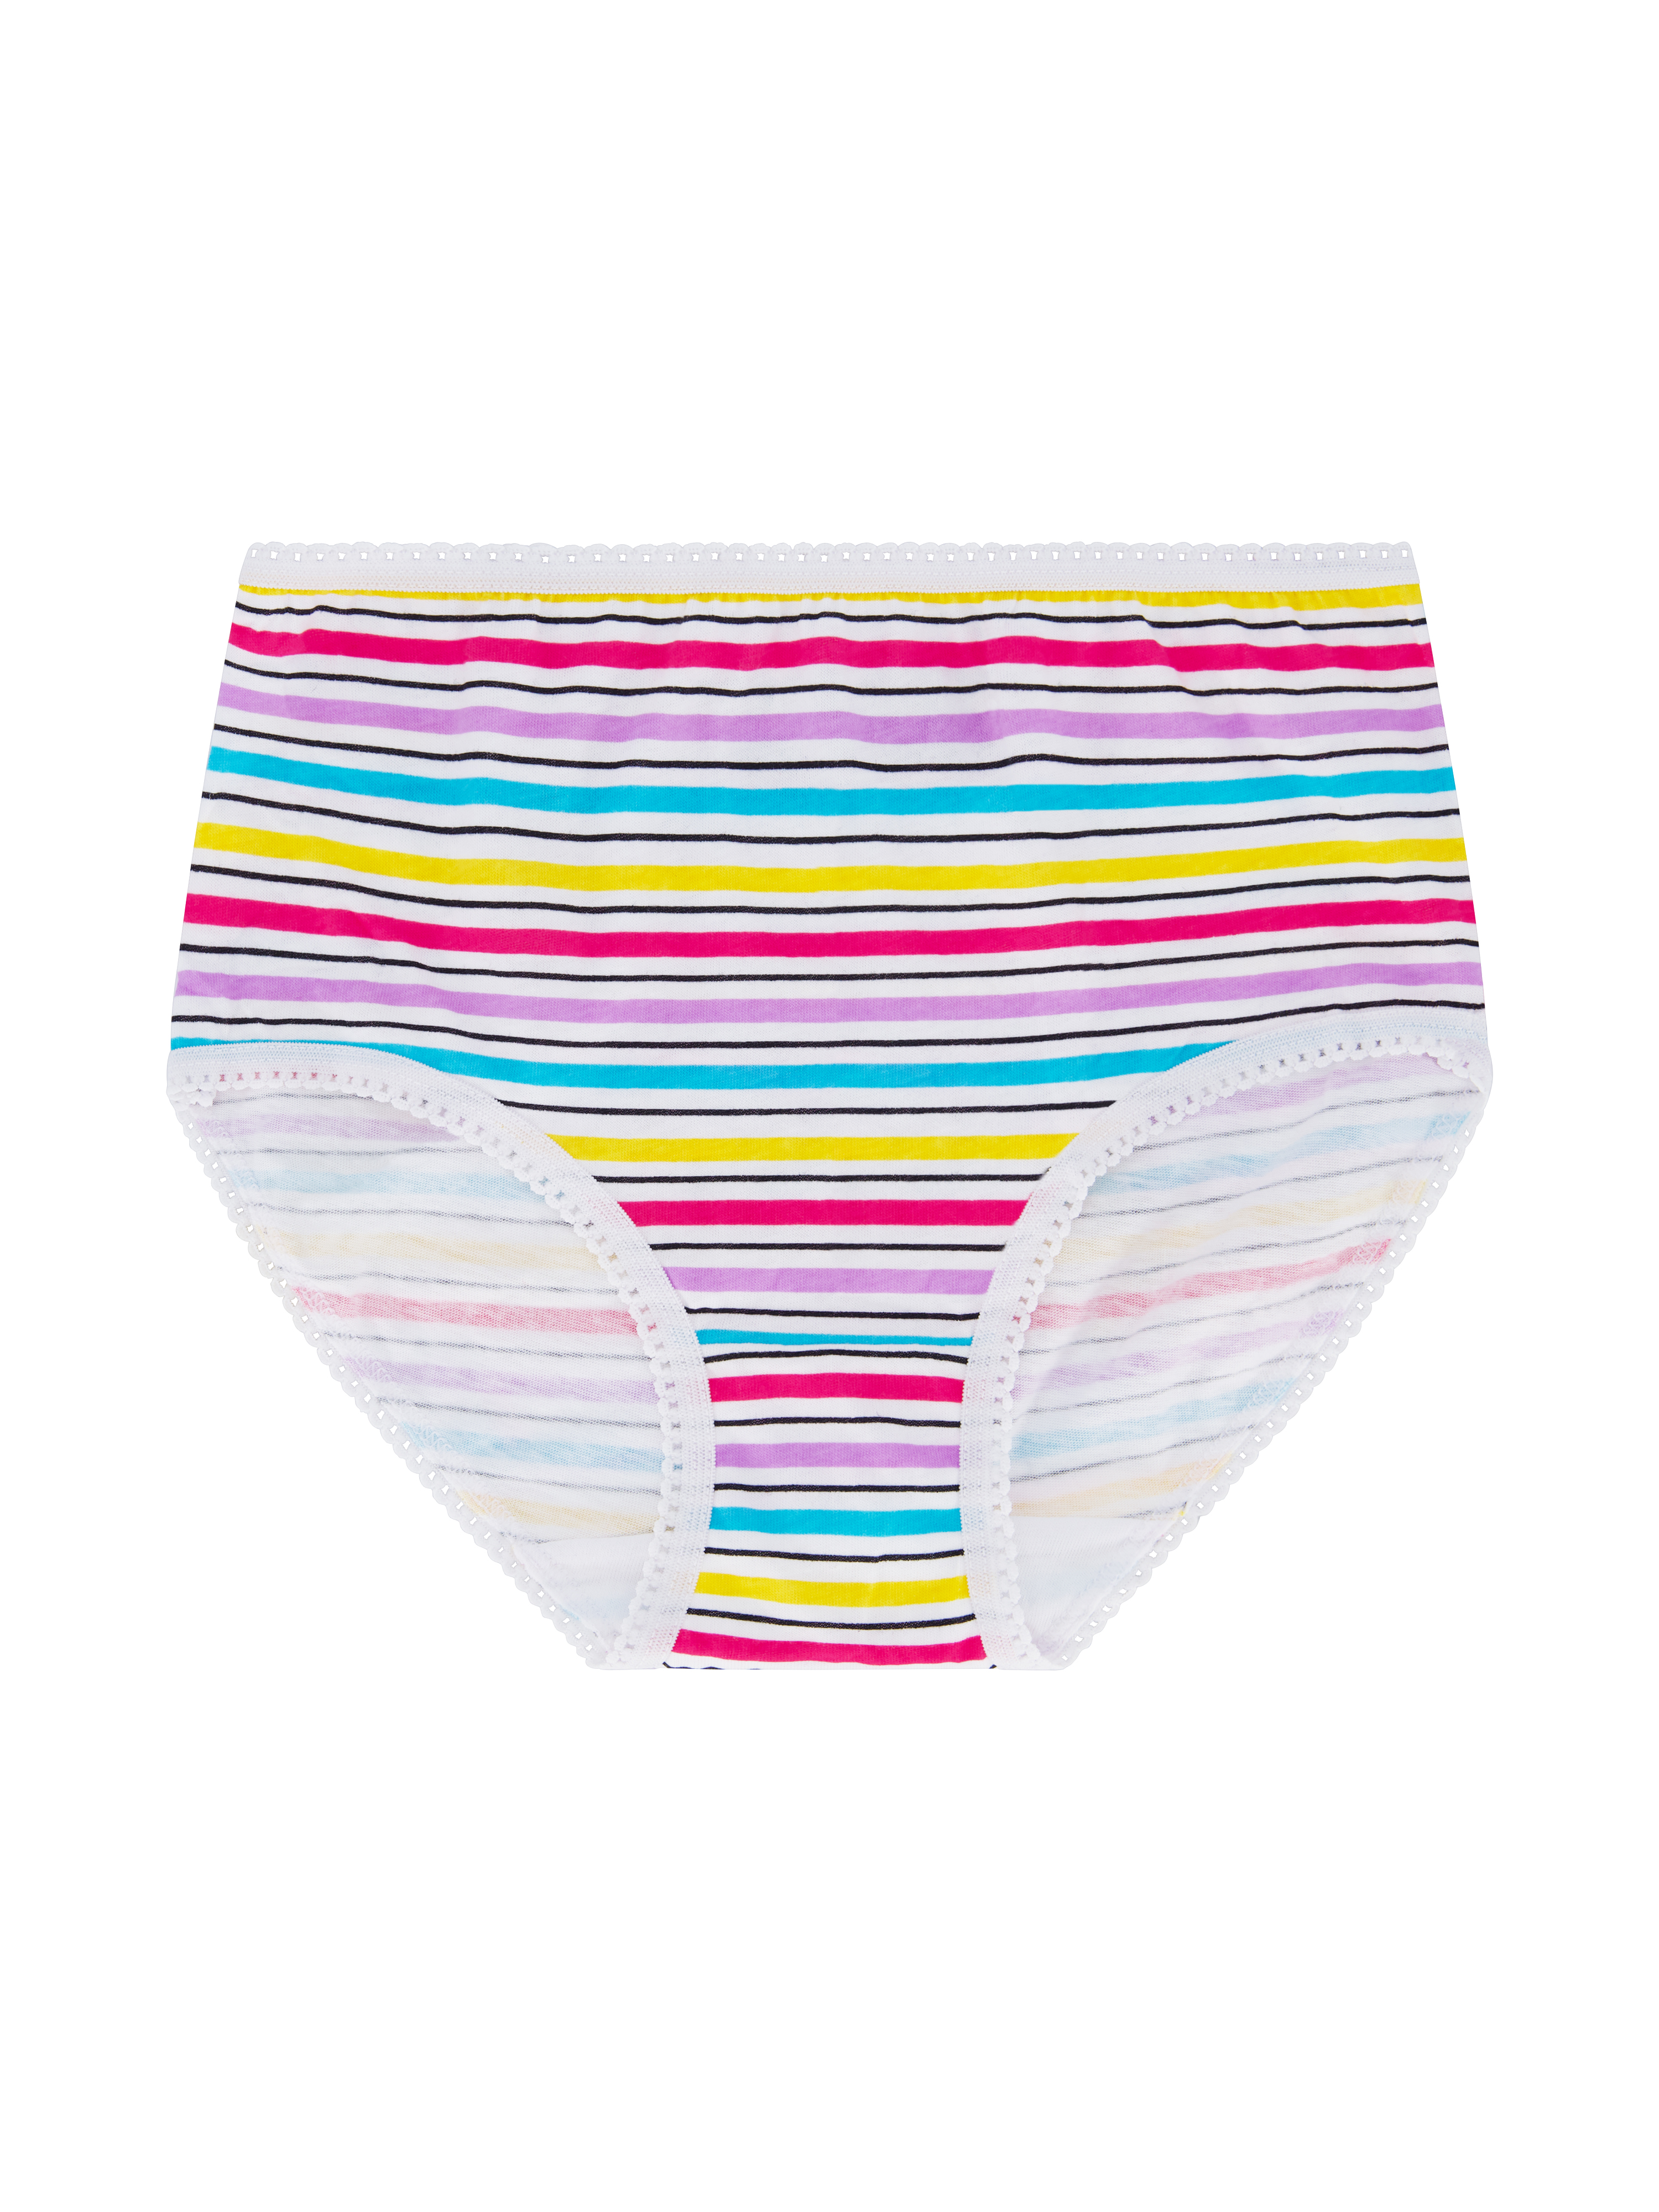 Wonder Nation Girls Brief Underwear 14-Pack, Sizes 4-18 - image 9 of 17